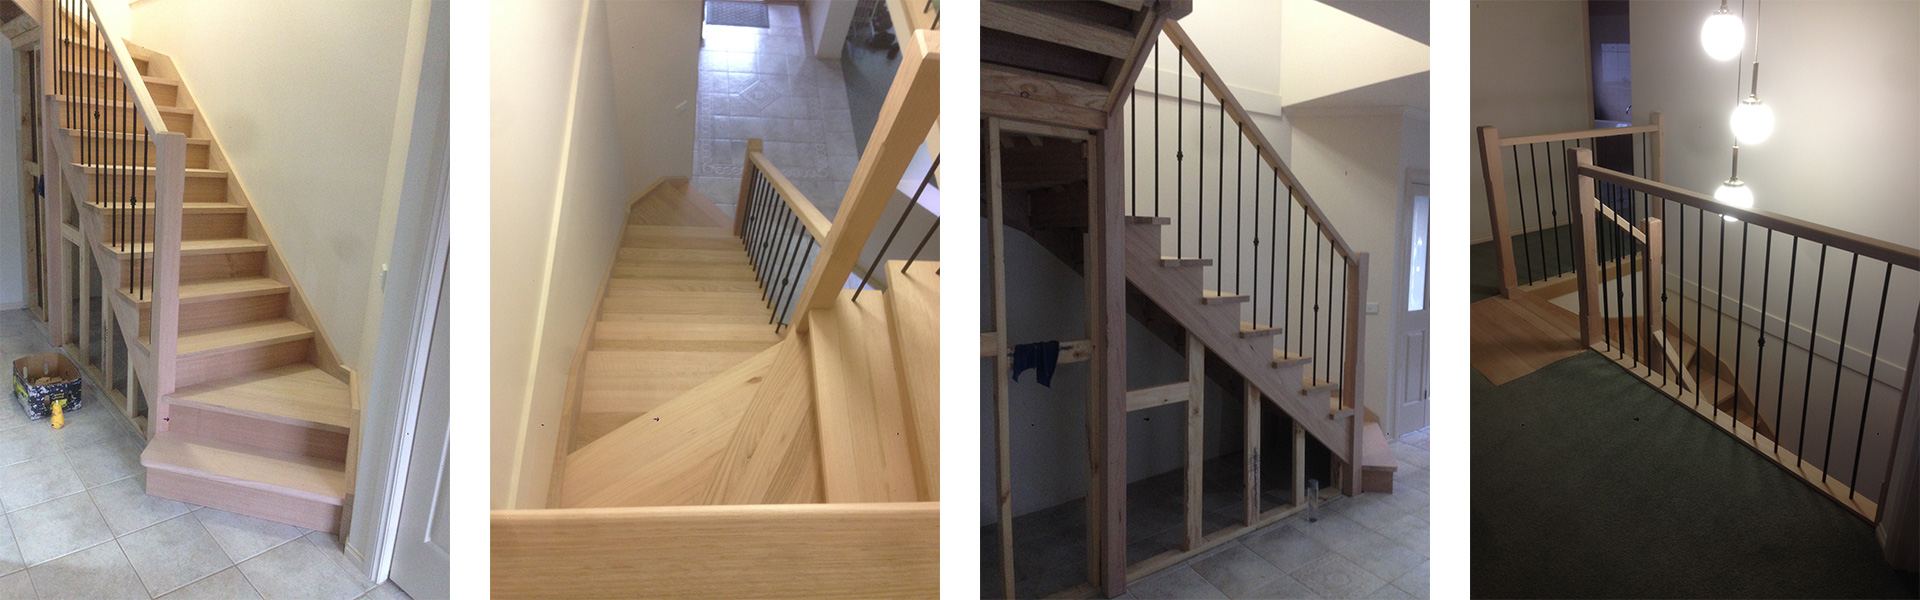 schody drewniane zabiegowe wewnętrzne z podwieszanymi stopniami, pół podwieszane, balustrady szklane, poręcze drewniane